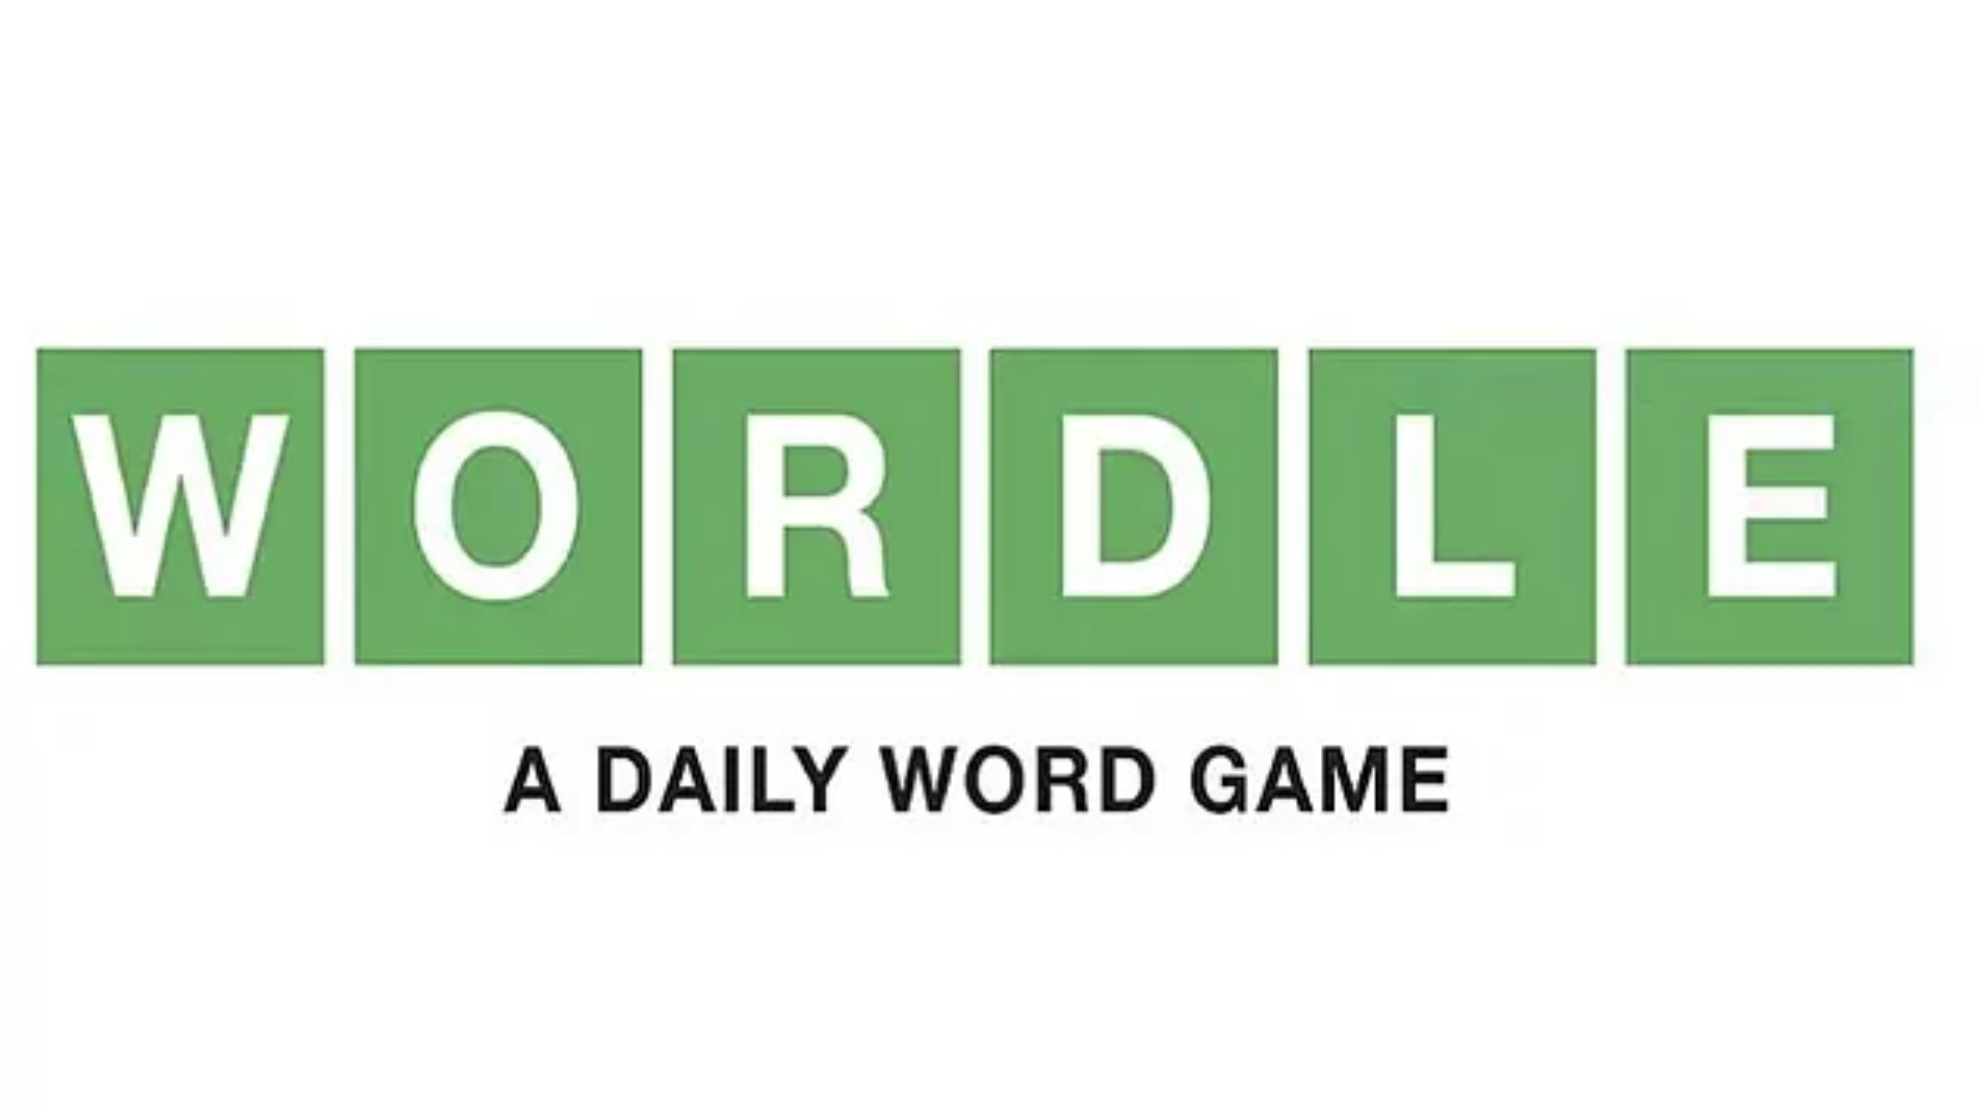 'Wordle' en español: Conoce las pistas y la solución al reto 37, para la palabra de hoy, 12 de febrero 2022